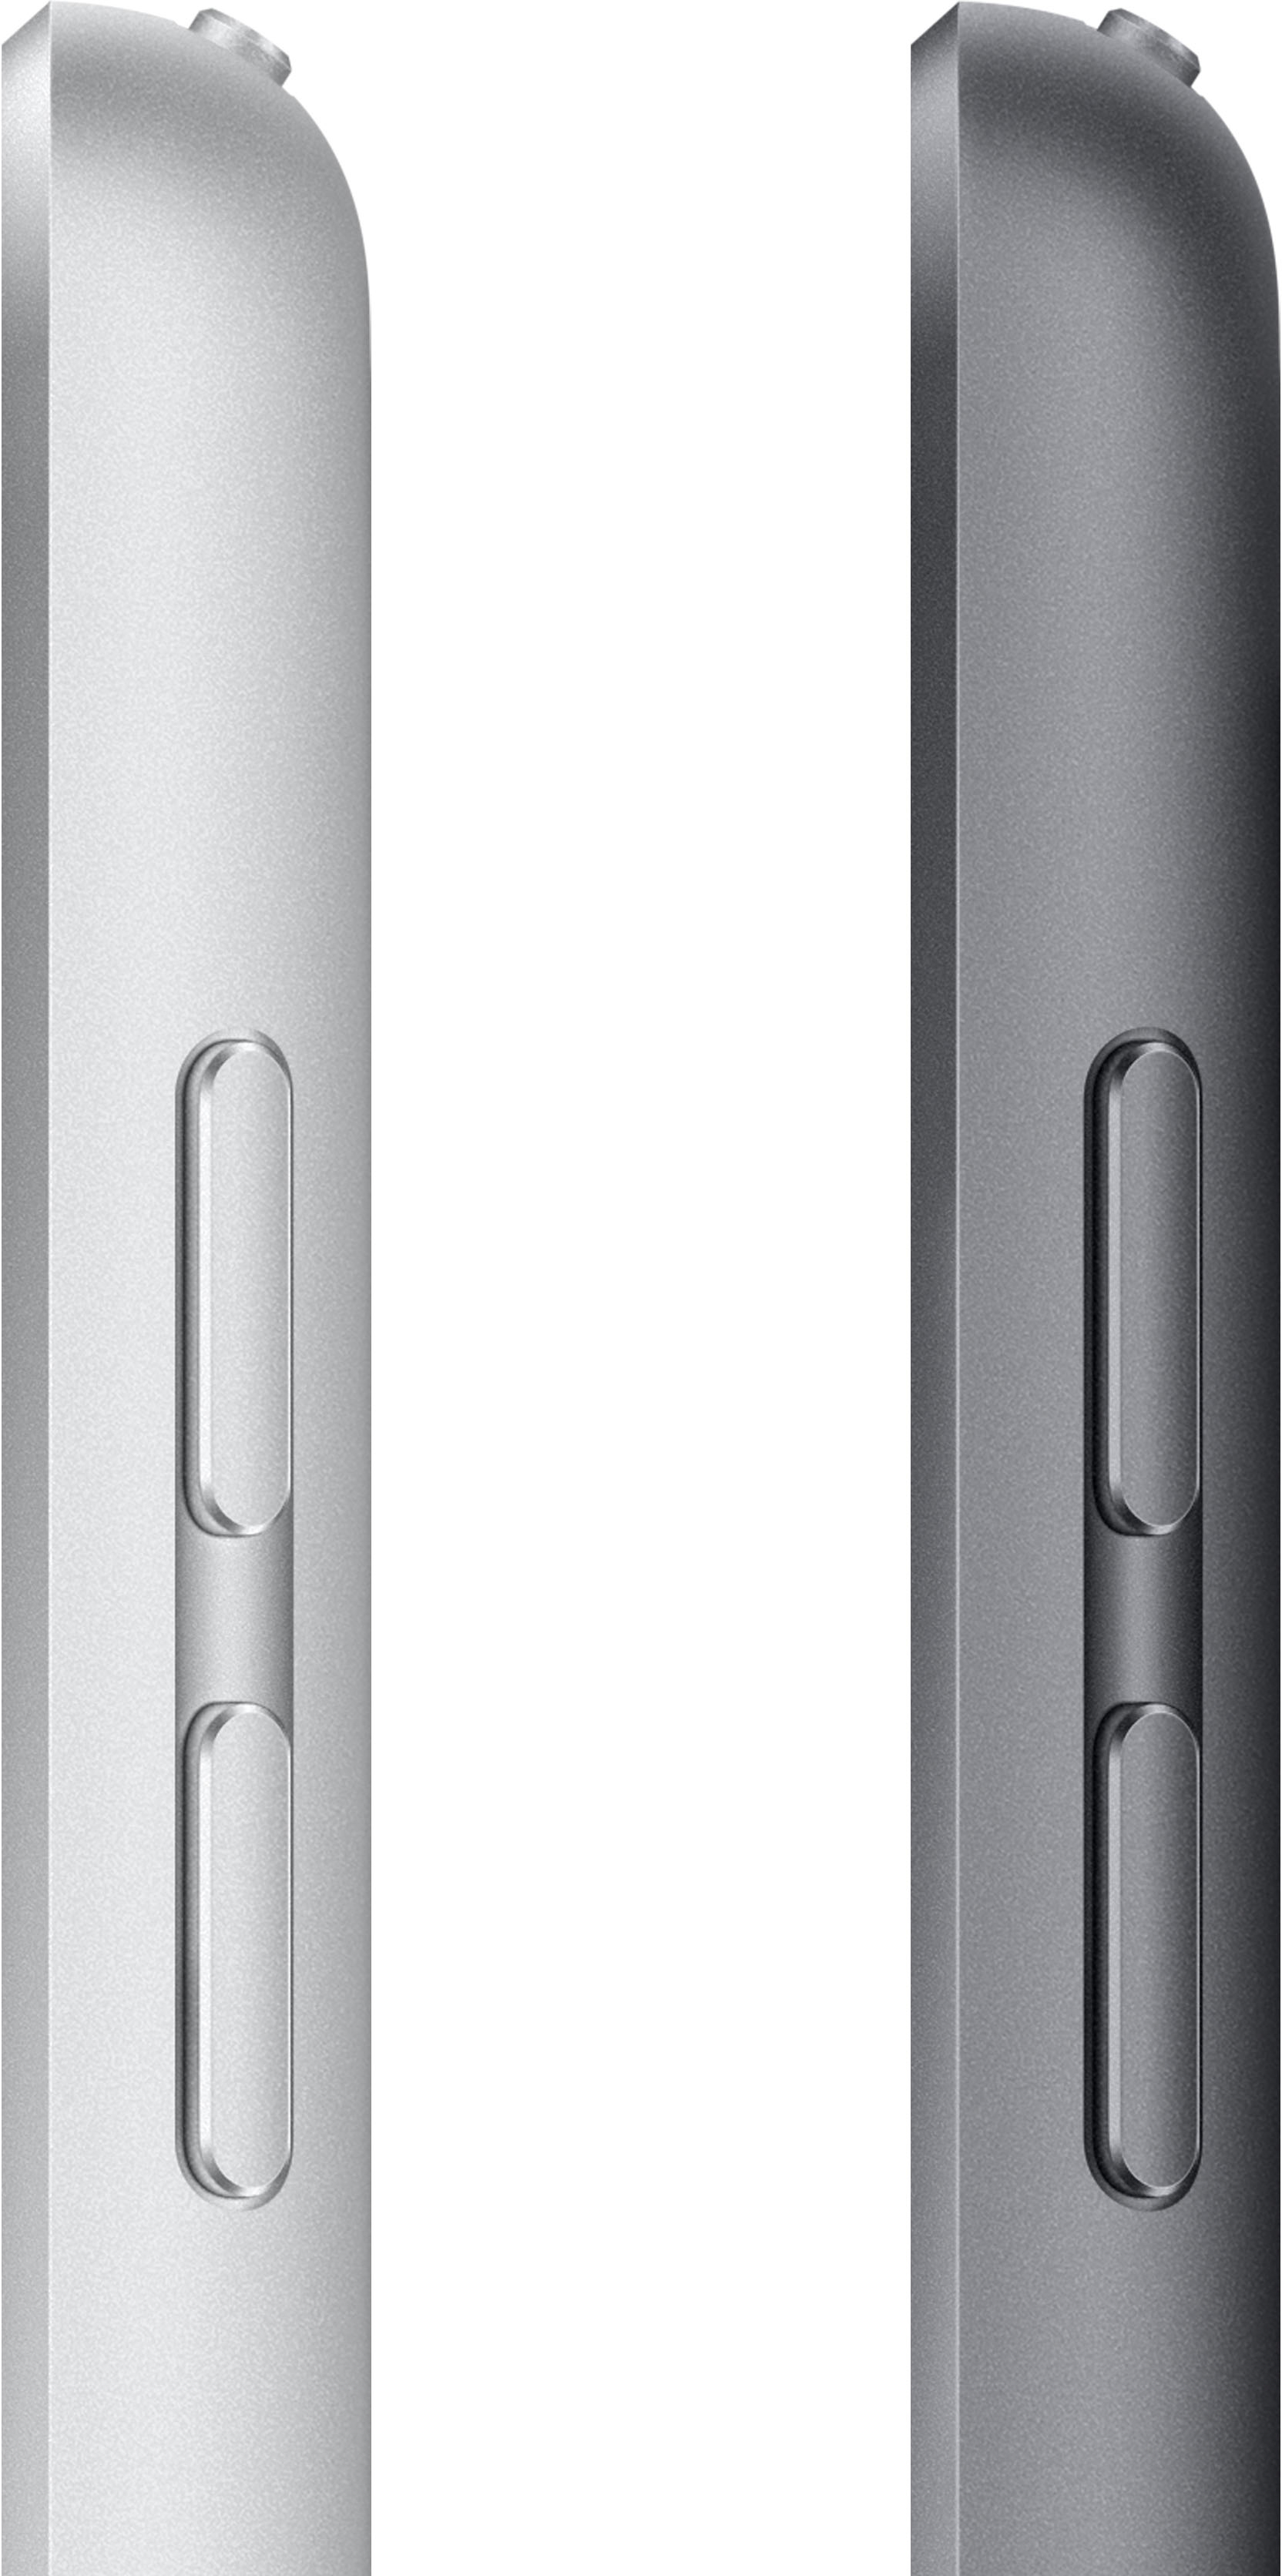 Buy 10.2-inch iPad Wi‑Fi 256GB - Space Gray